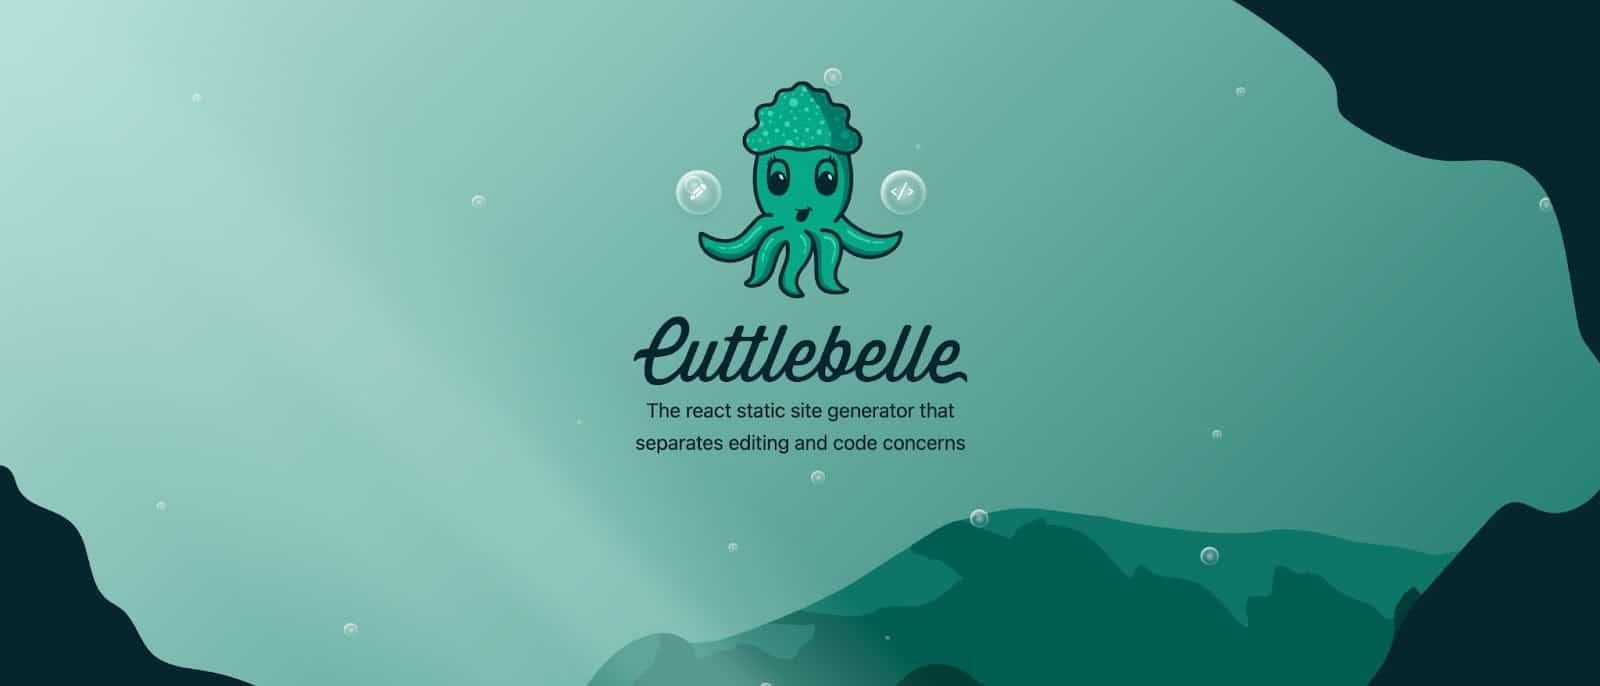 La homepage del sito di Cuttlebelle